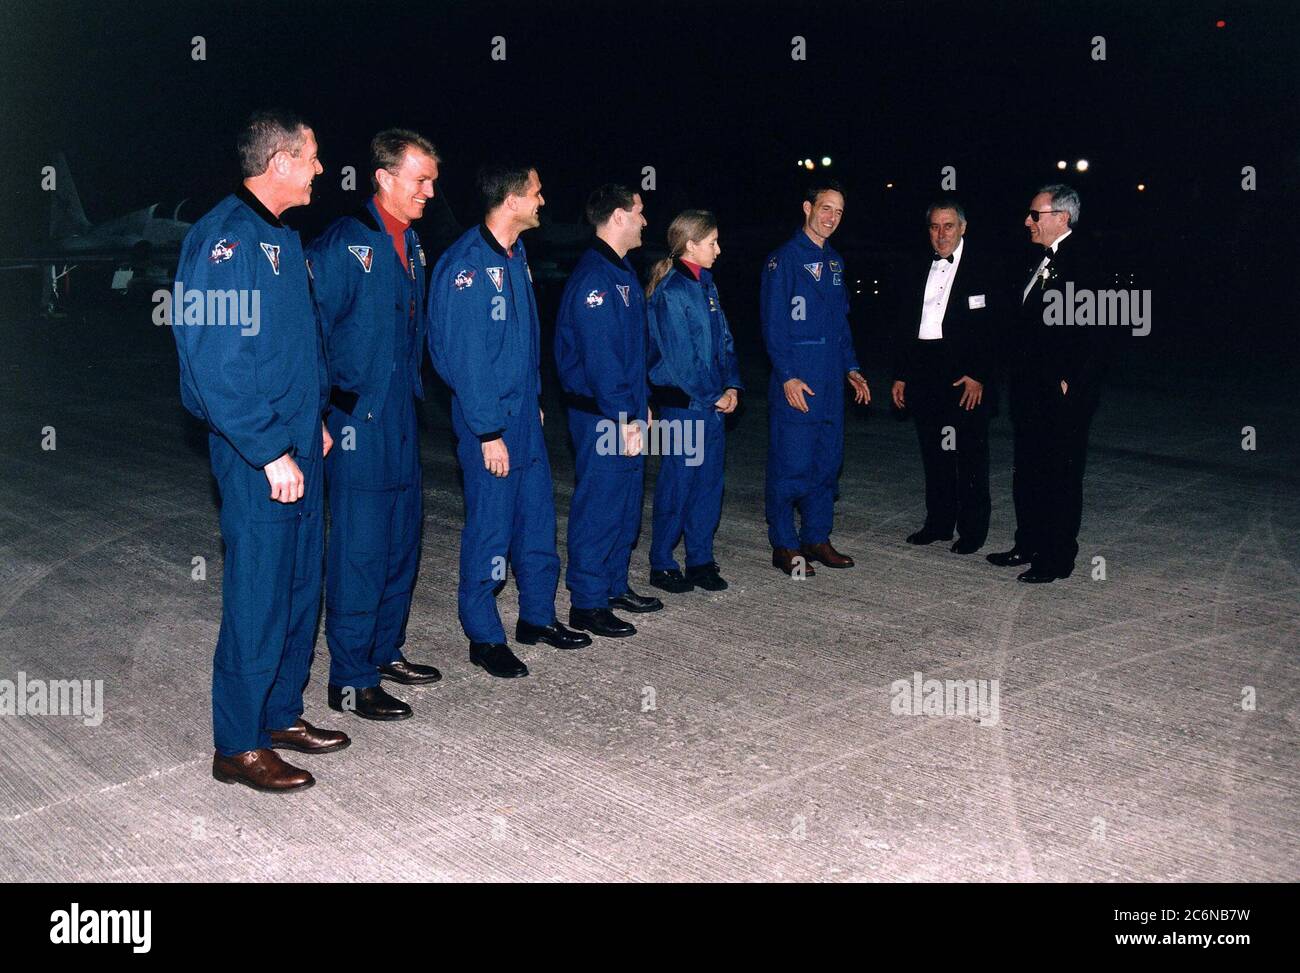 L'equipaggio di volo STS-81 è accolto in KSC dall'amministratore della NASA Daniel Goldin (estrema destra) e dal direttore del Johnson Space Center George Abbey (seconda da destra) quando arrivano al centro spaziale per i preparativi finali per il quinto viaggio di attracco dello Shuttle-Mir. Essi sono (da sinistra): Comandante della missione Michael A. Baker; pilota Brent W. Jett, Jr.; e specialisti della missione Peter J. K. 'Jeff' Wisoff; John M. Grunsfeld, Marsha S. Ivins, e J.M. 'Jerry' Linenger. Foto Stock